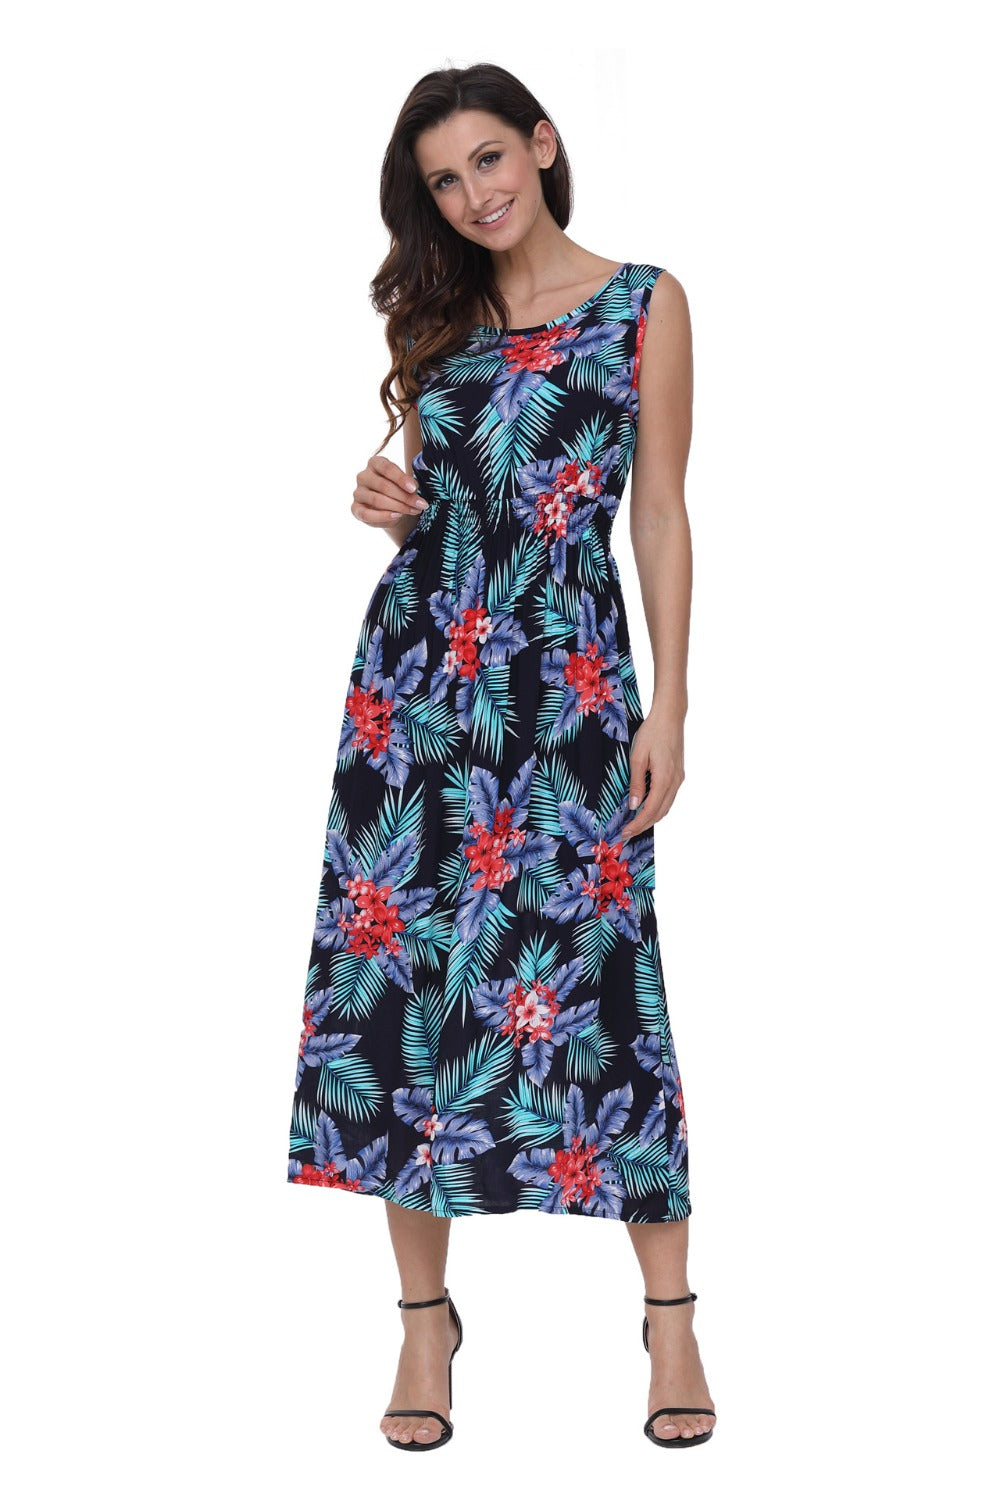 Women's Summer Casual High-Waist Long Dress With Print